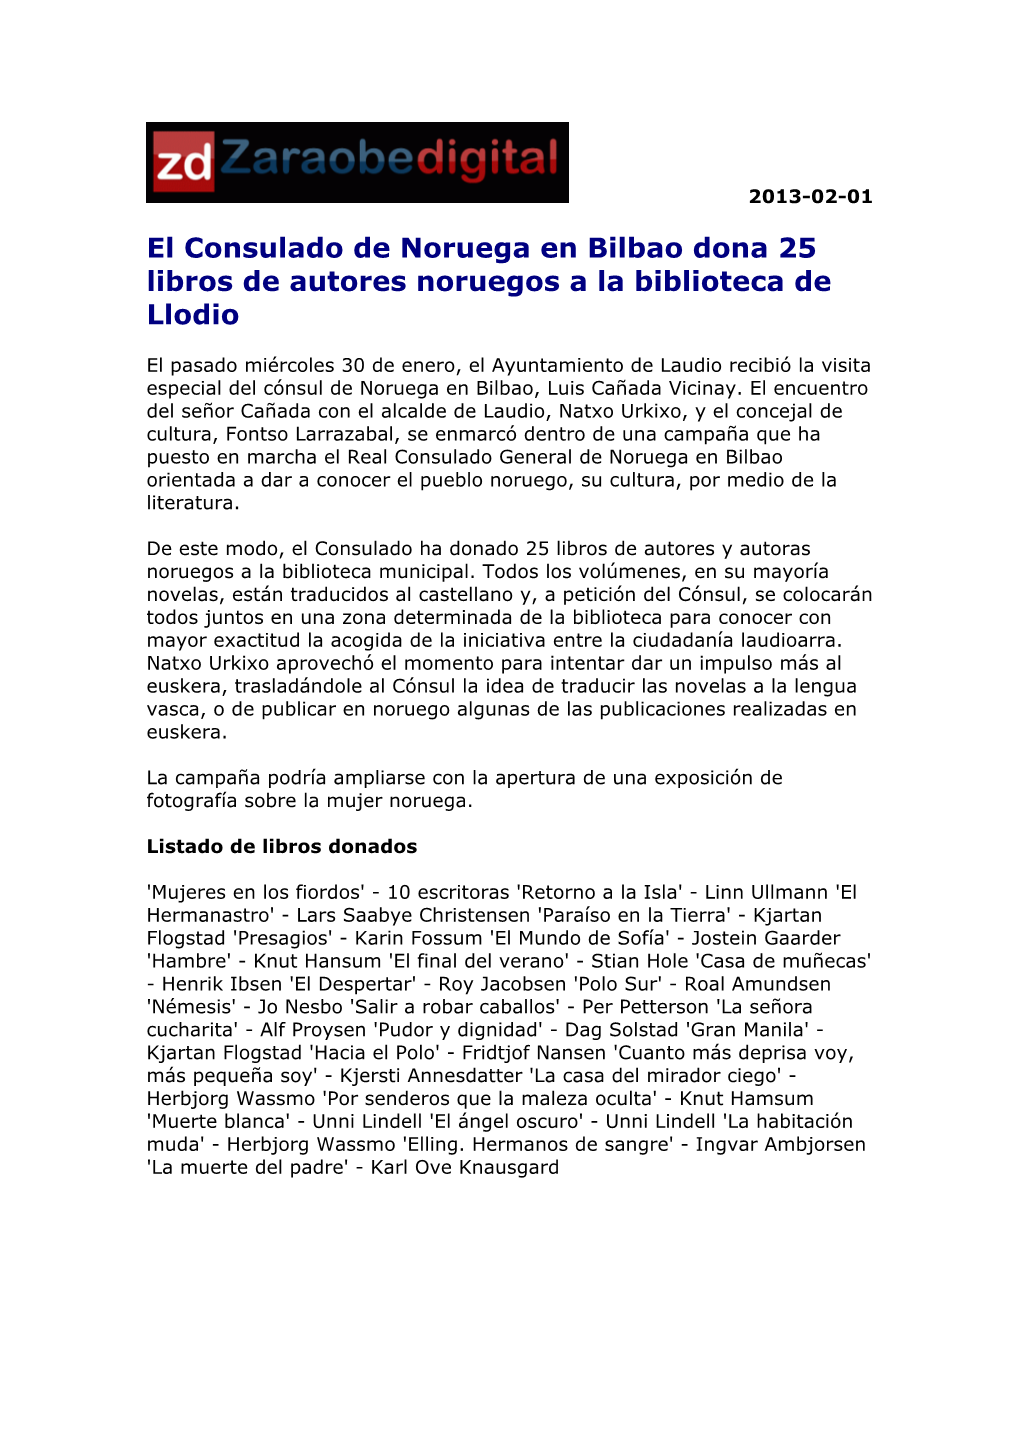 El Consulado De Noruega En Bilbao Dona 25 Libros De Autores Noruegos a La Biblioteca De Llodio